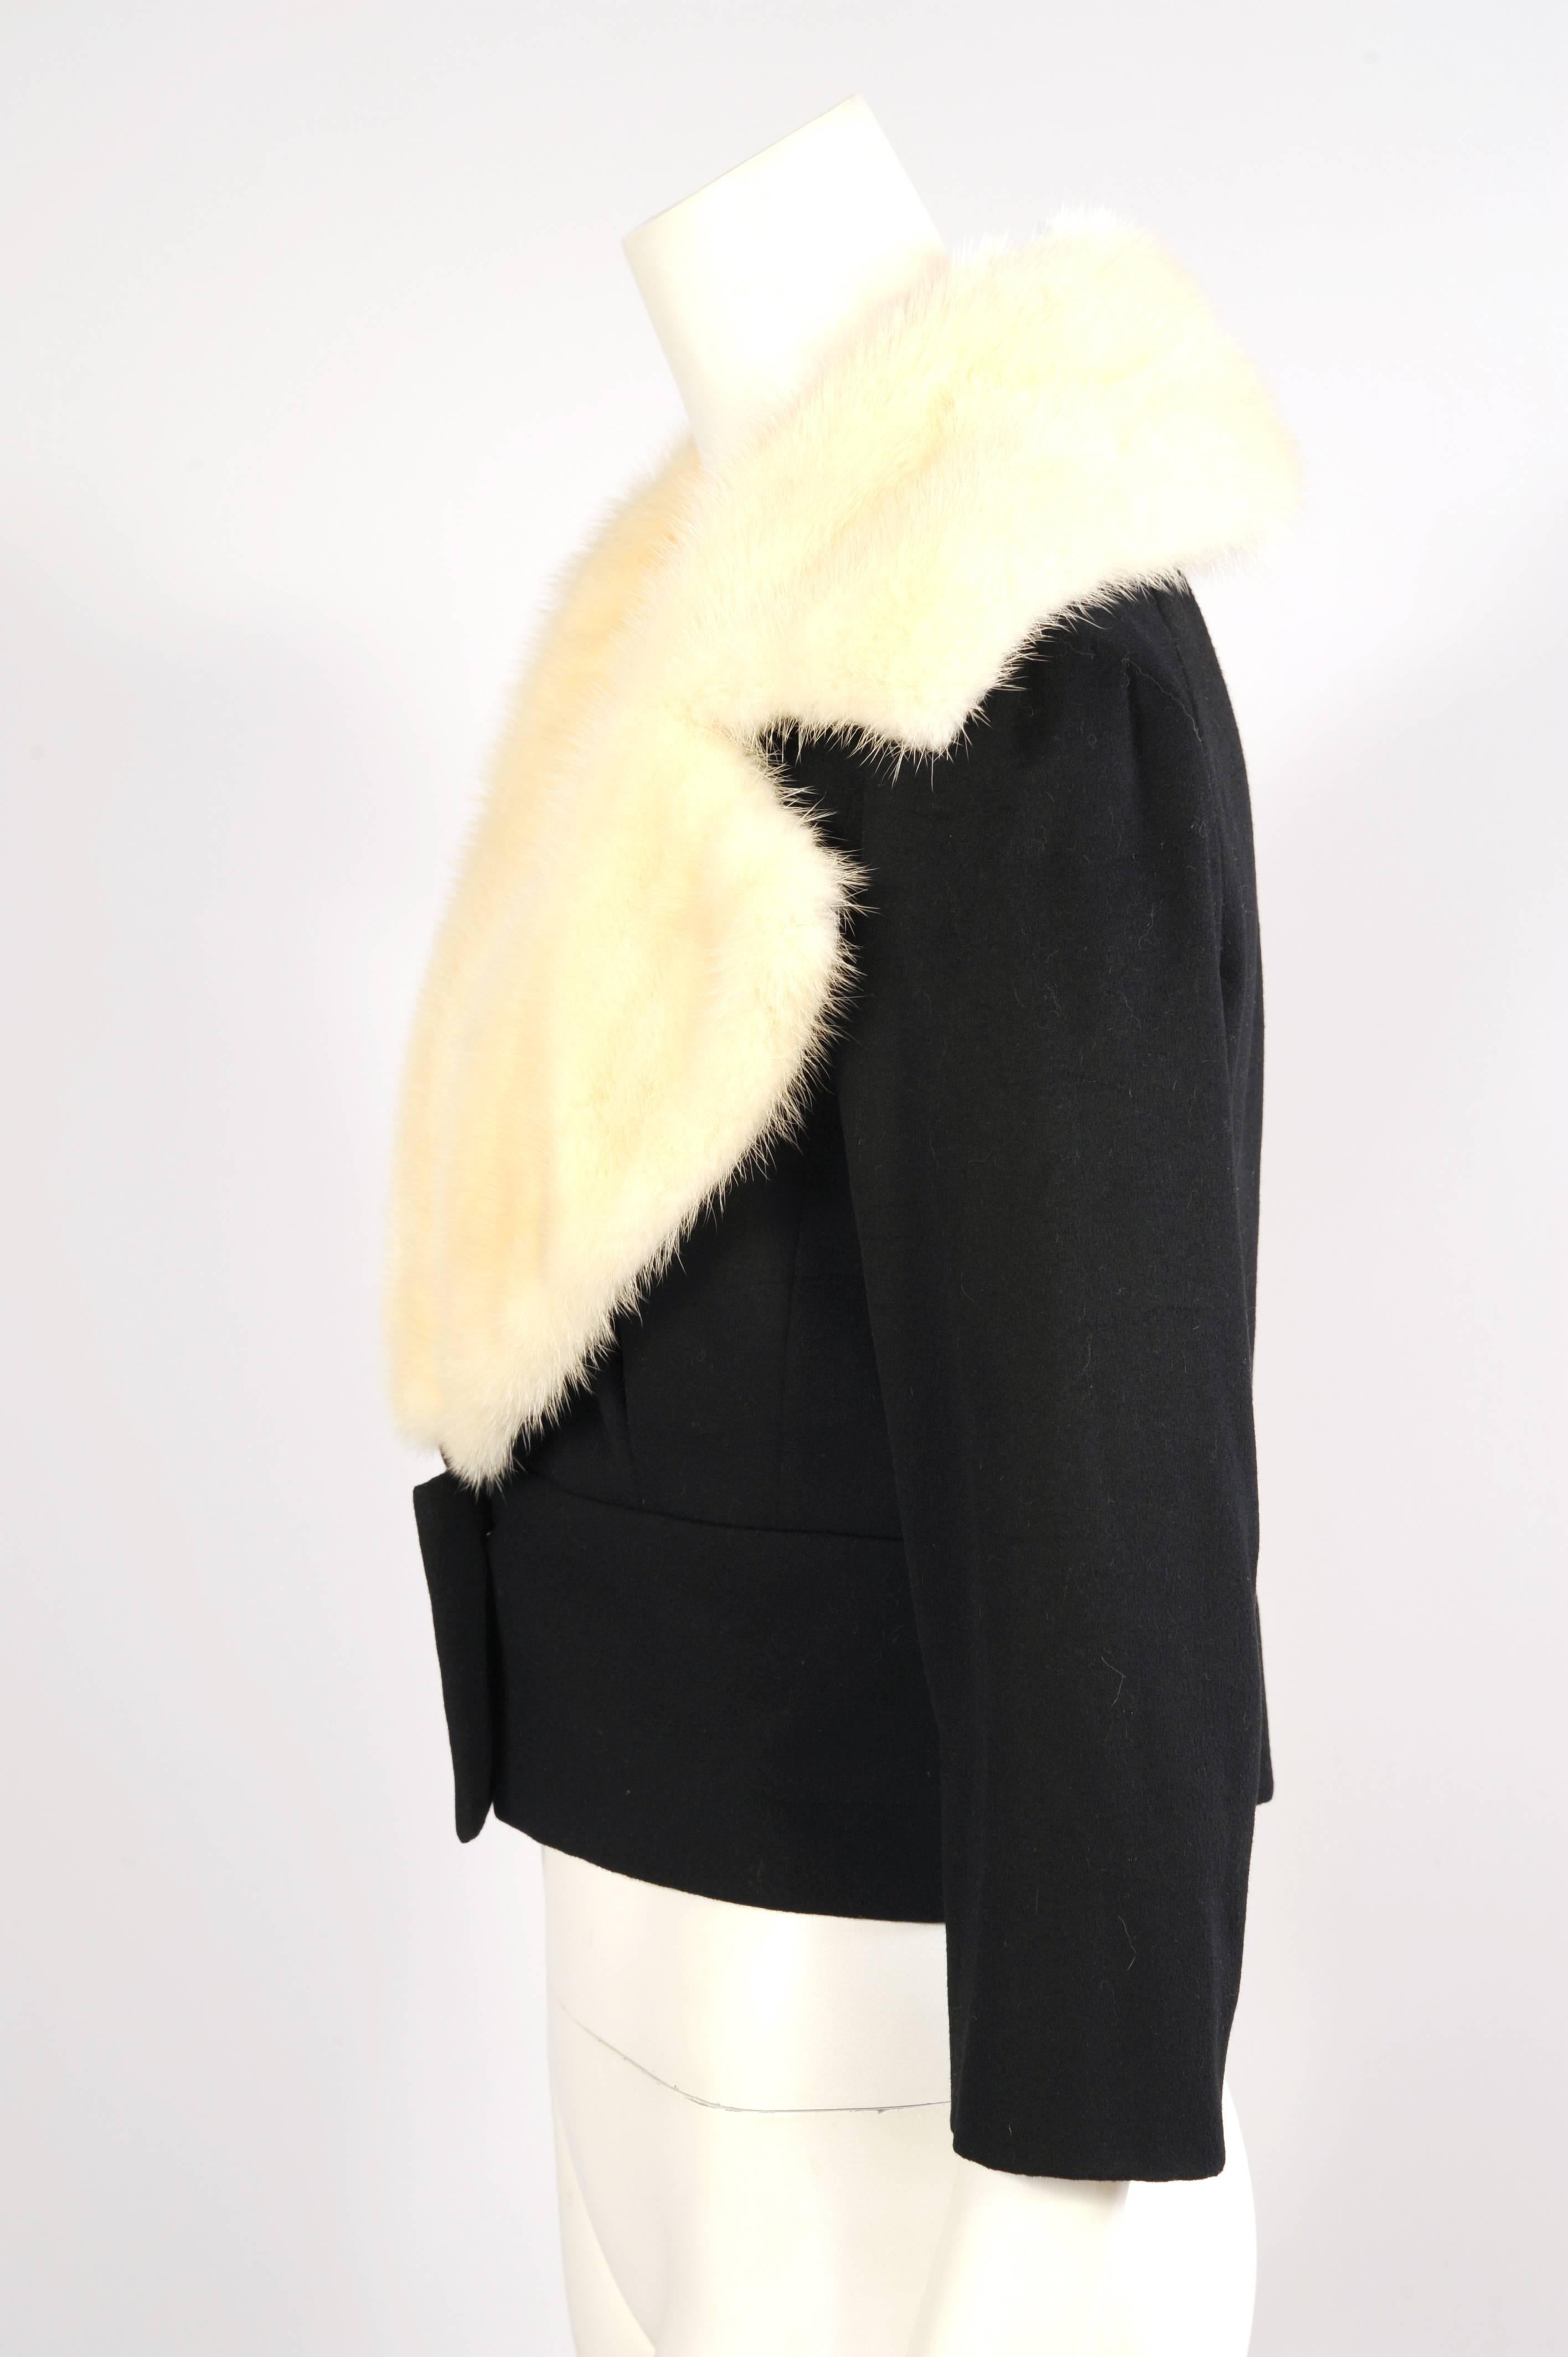 Der weichste schwarze Kaschmir wird mit dem geschmeidigsten weißen Nerz in dieser nummerierten Haute Couture Jacke von Jean Patou kombiniert. Der tief ausgeschnittene Ausschnitt ist mit einem großzügigen weißen Nerzkragen umhüllt, der in ein